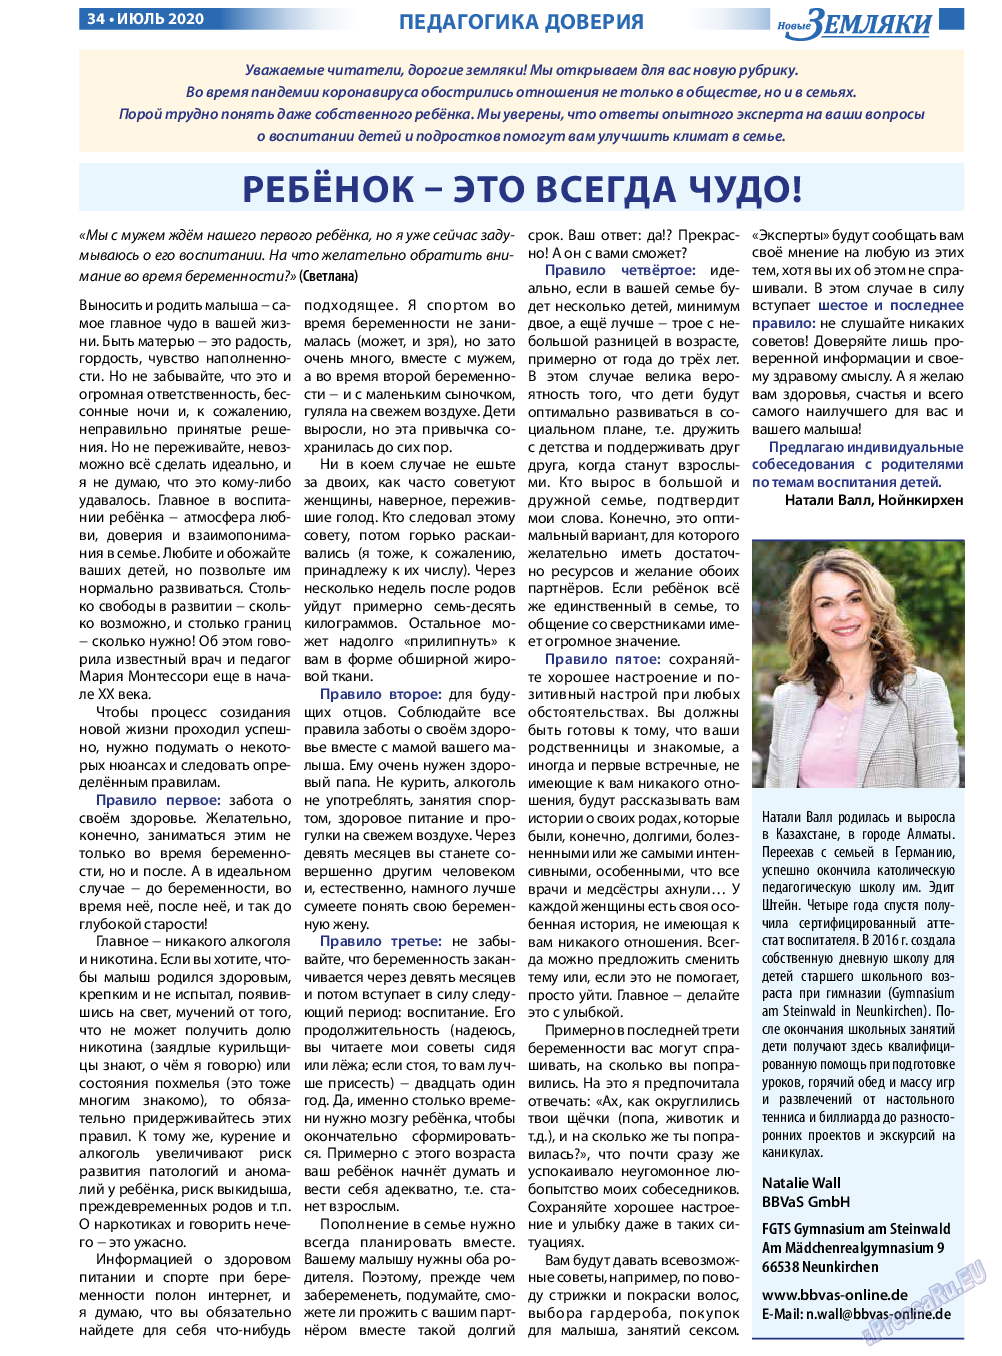 Новые Земляки, газета. 2020 №7 стр.34